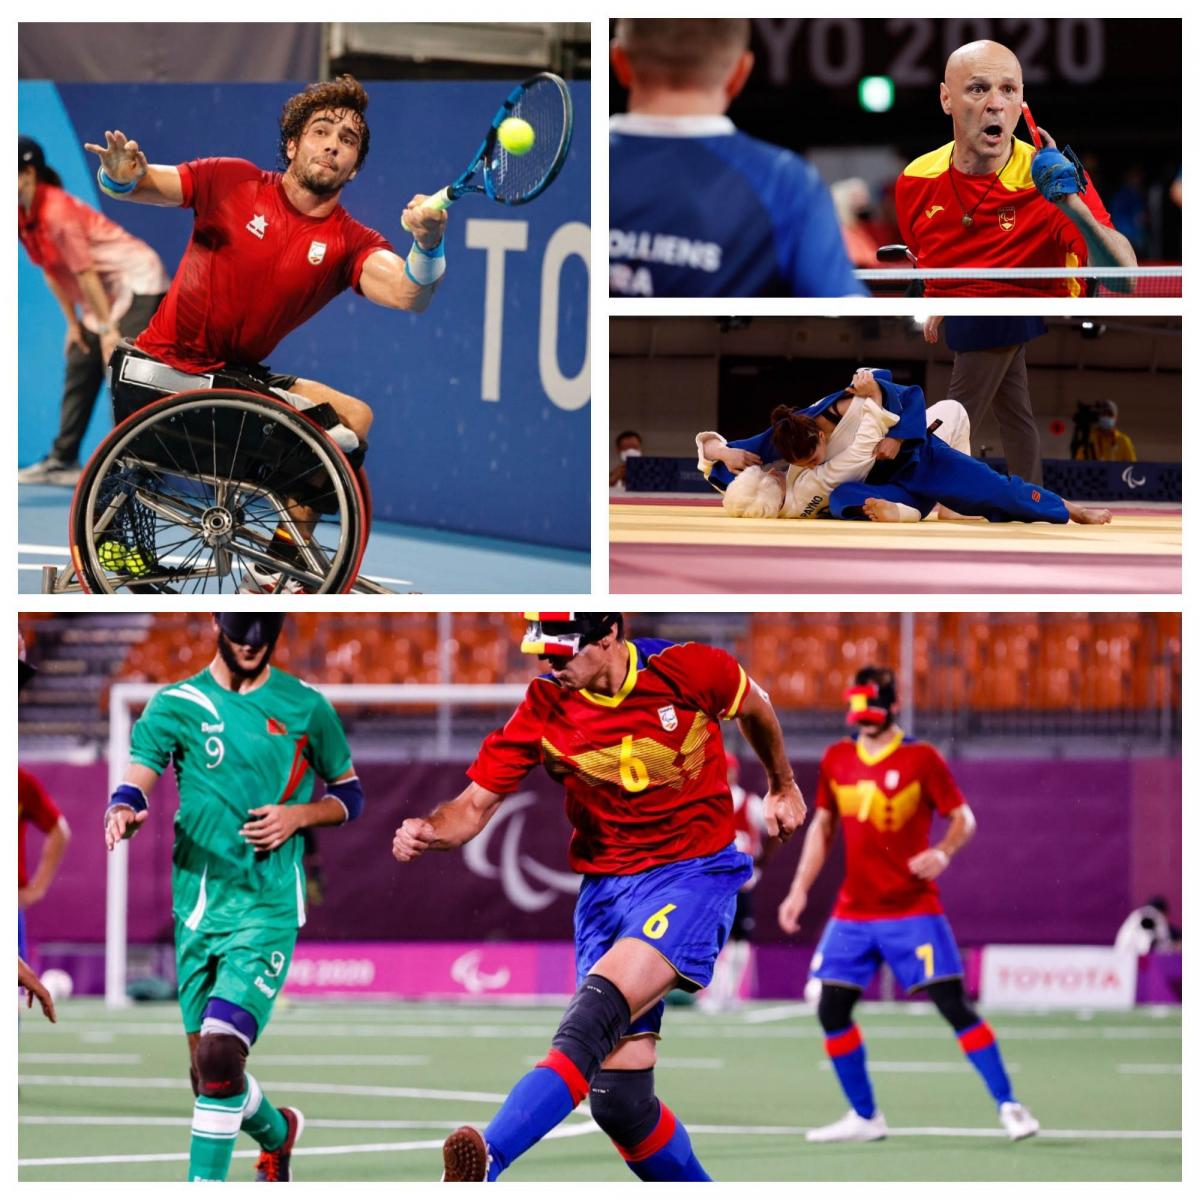 Collage con varios de los deportistas madrileños